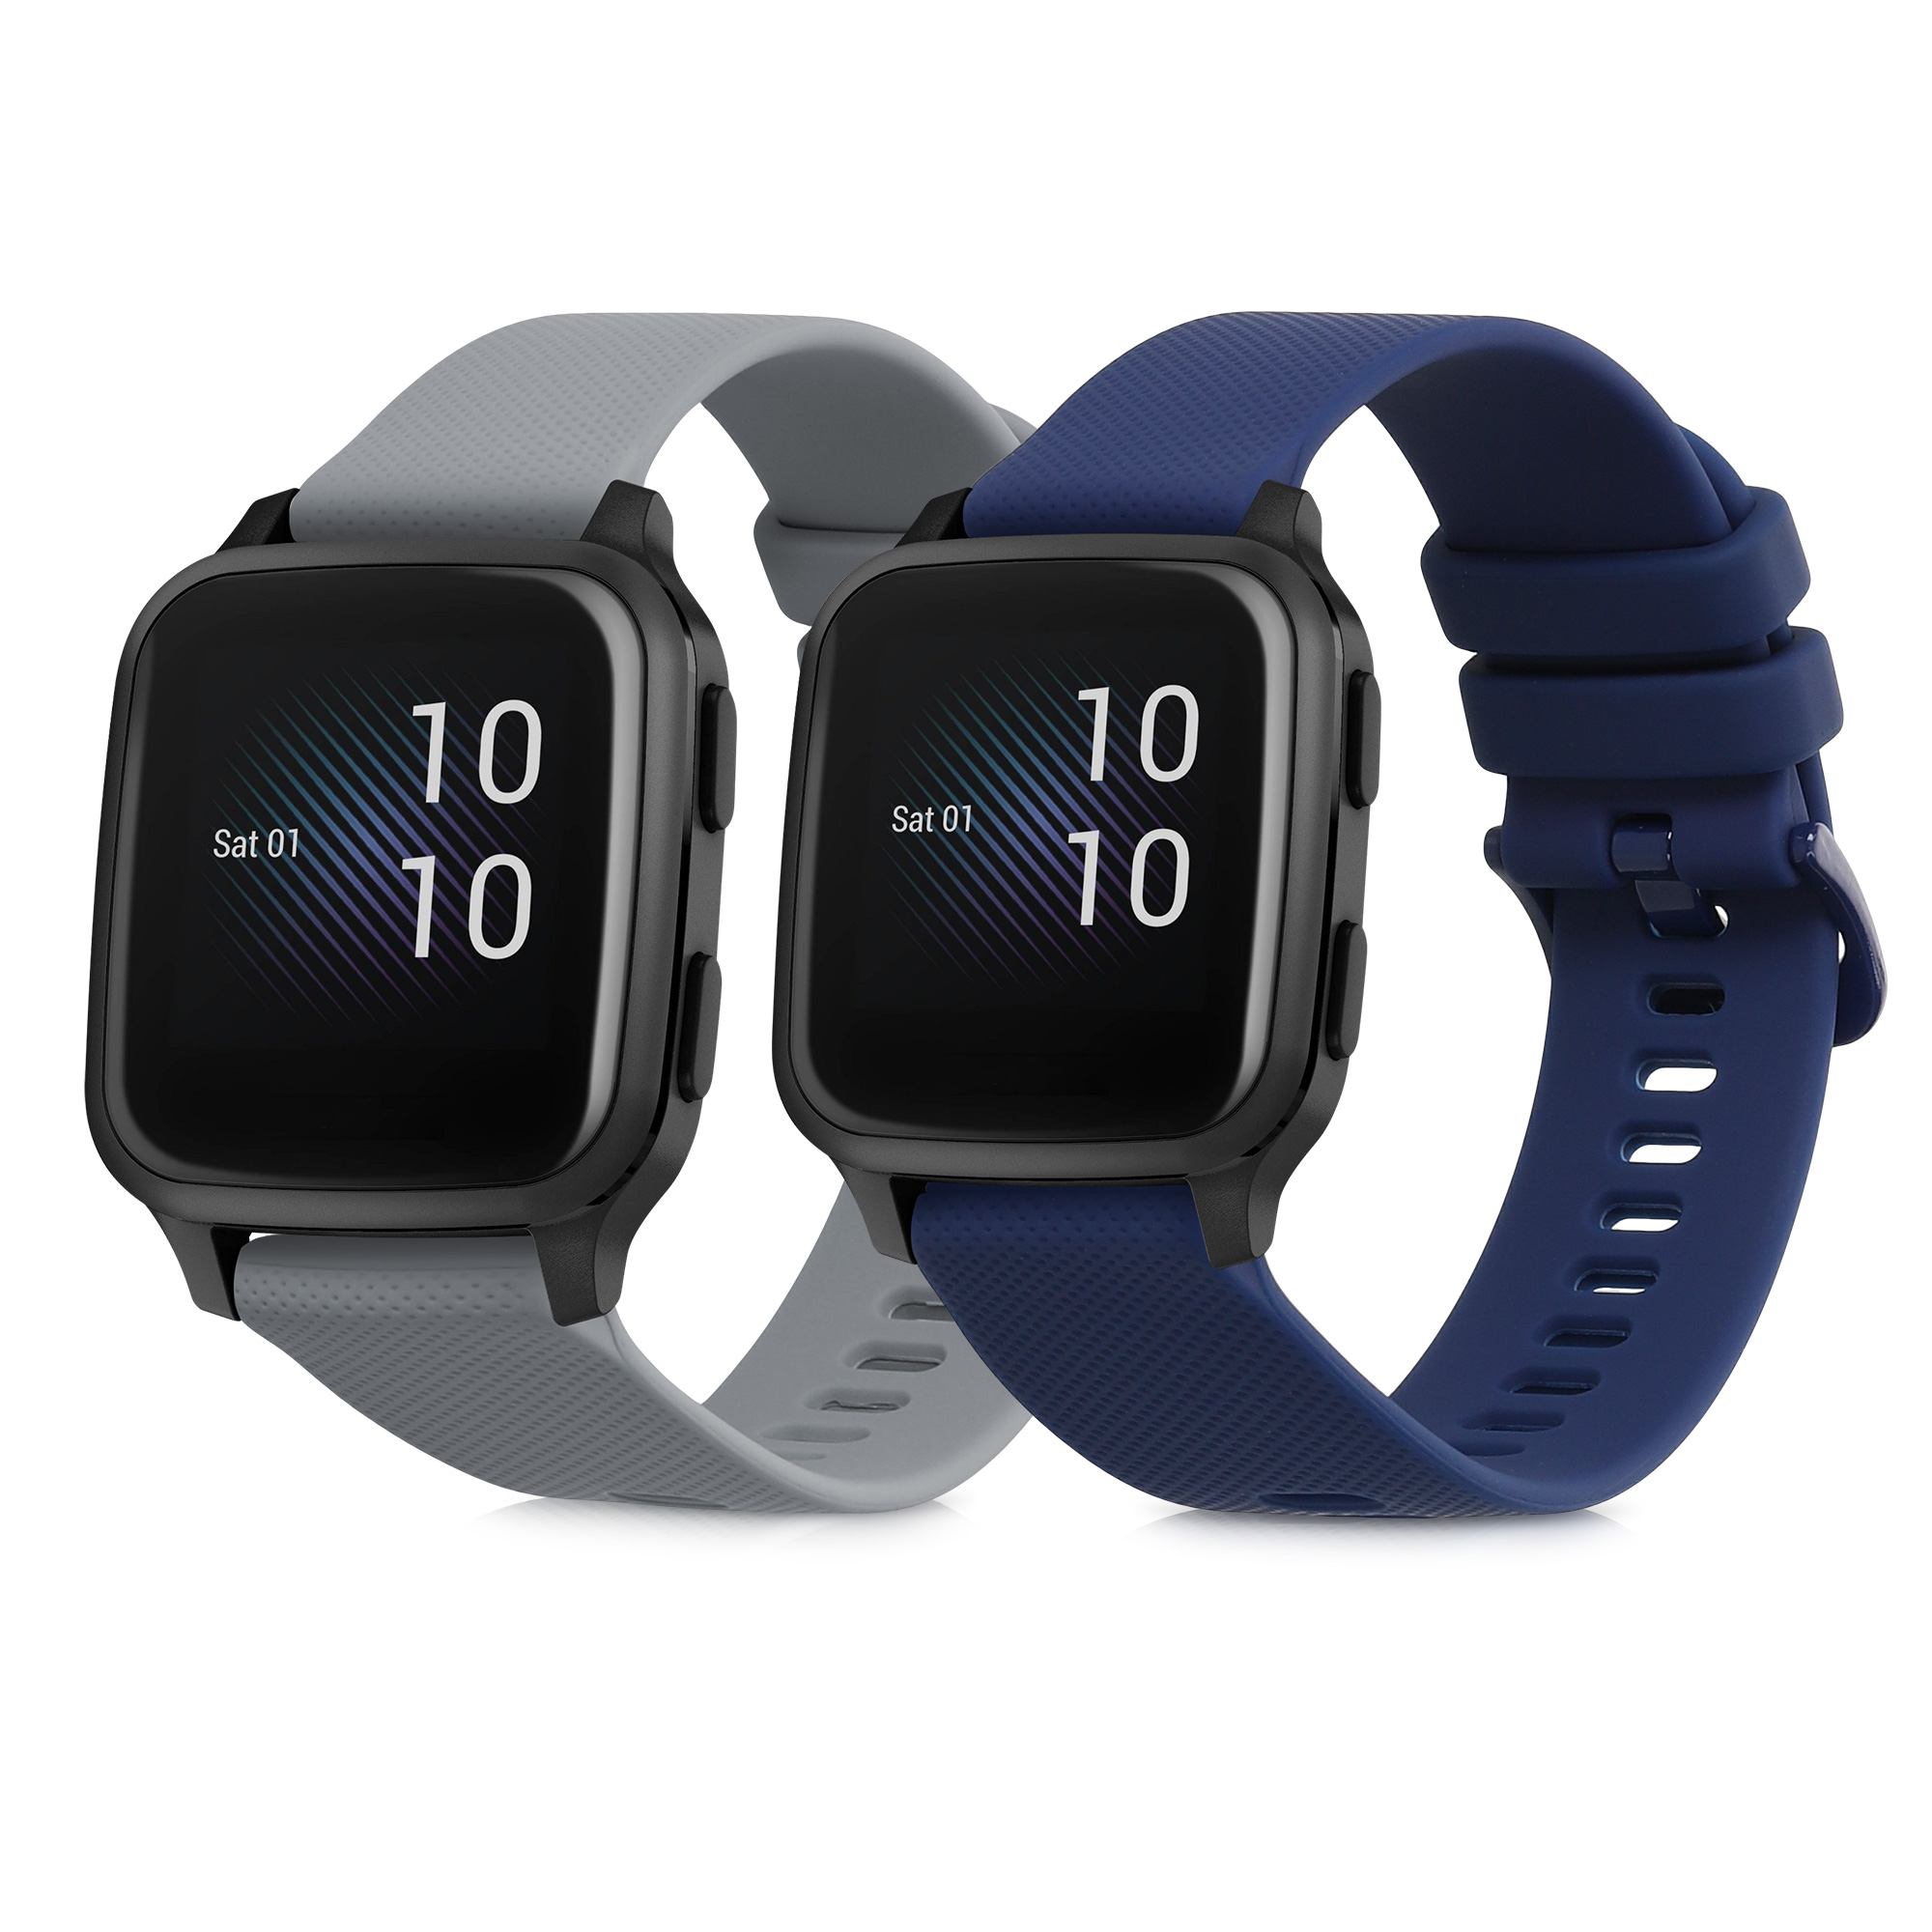 Smartwatch Rundes 2.5D HD Display IPX7 Wasserdicht Bluetooth Uhr iOS LG Android 